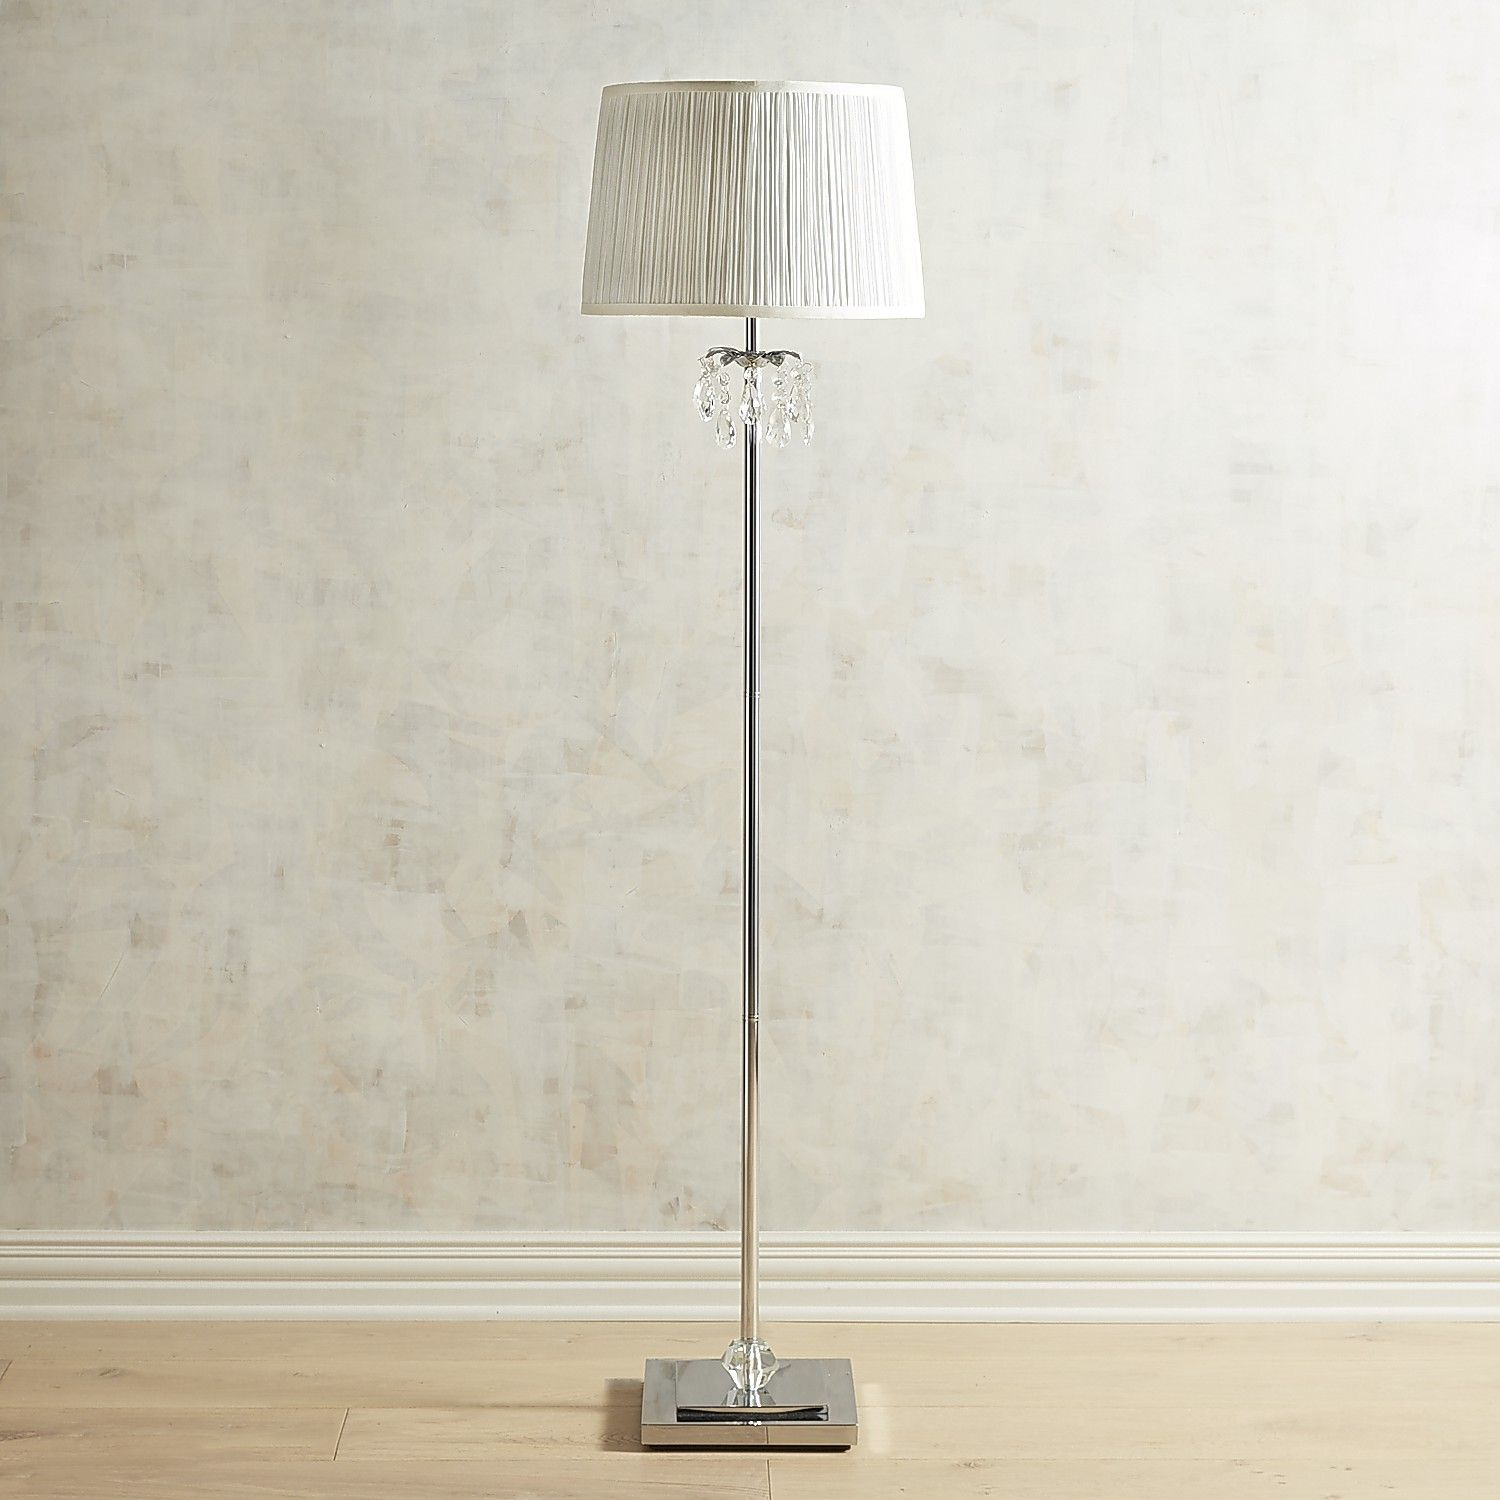 Tina Crystal Bead Floor Lamp Products Floor Lamp regarding sizing 1500 X 1500